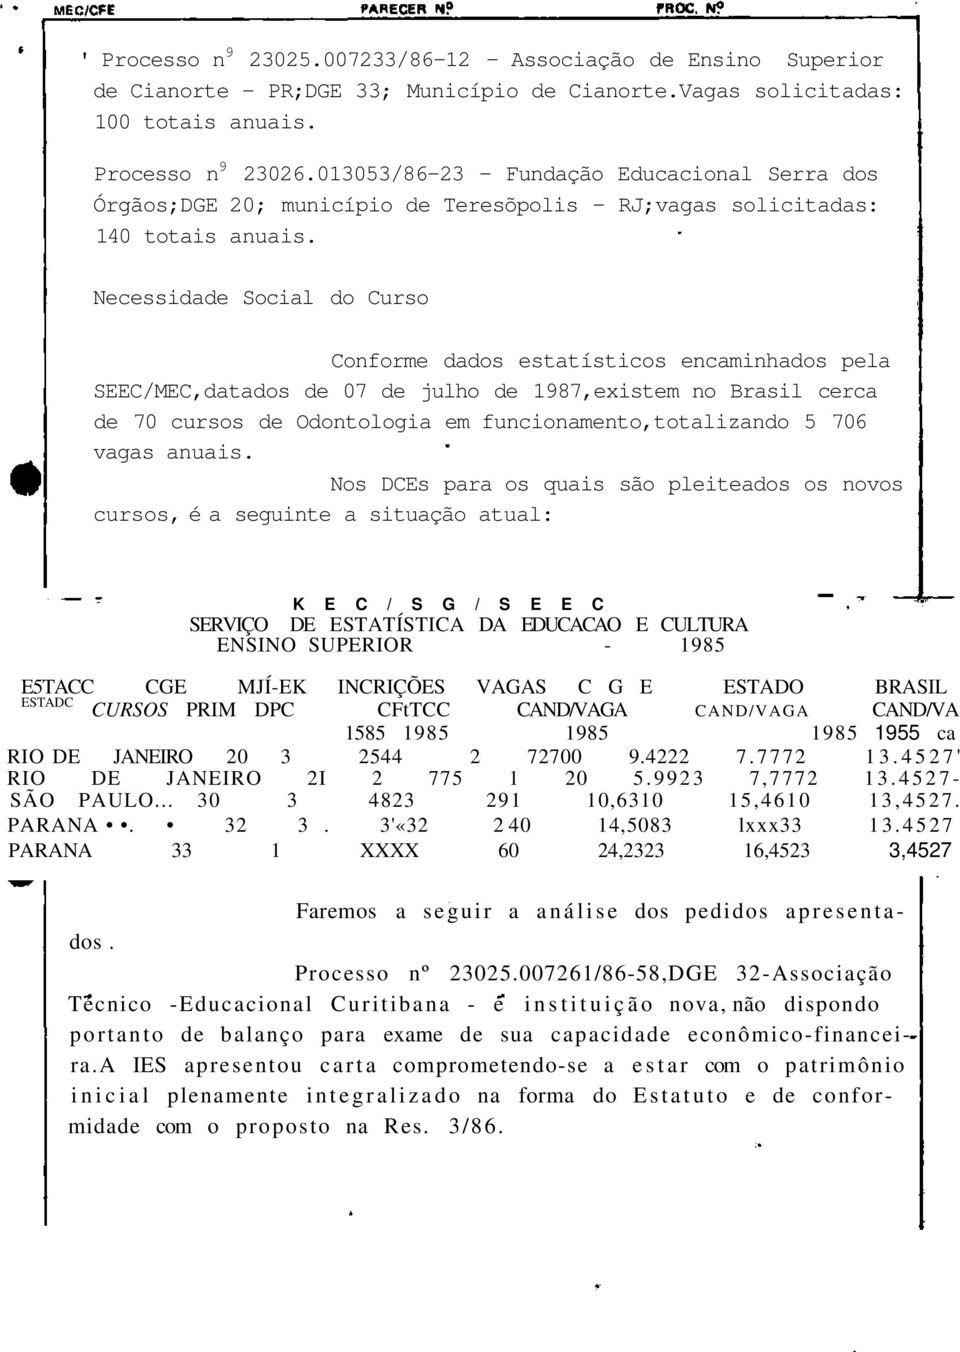 Necessidade Social do Curso Conforme dados estatísticos encaminhados pela SEEC/MEC,datados de 07 de julho de 1987,existem no Brasil cerca de 70 cursos de Odontologia em funcionamento,totalizando 5